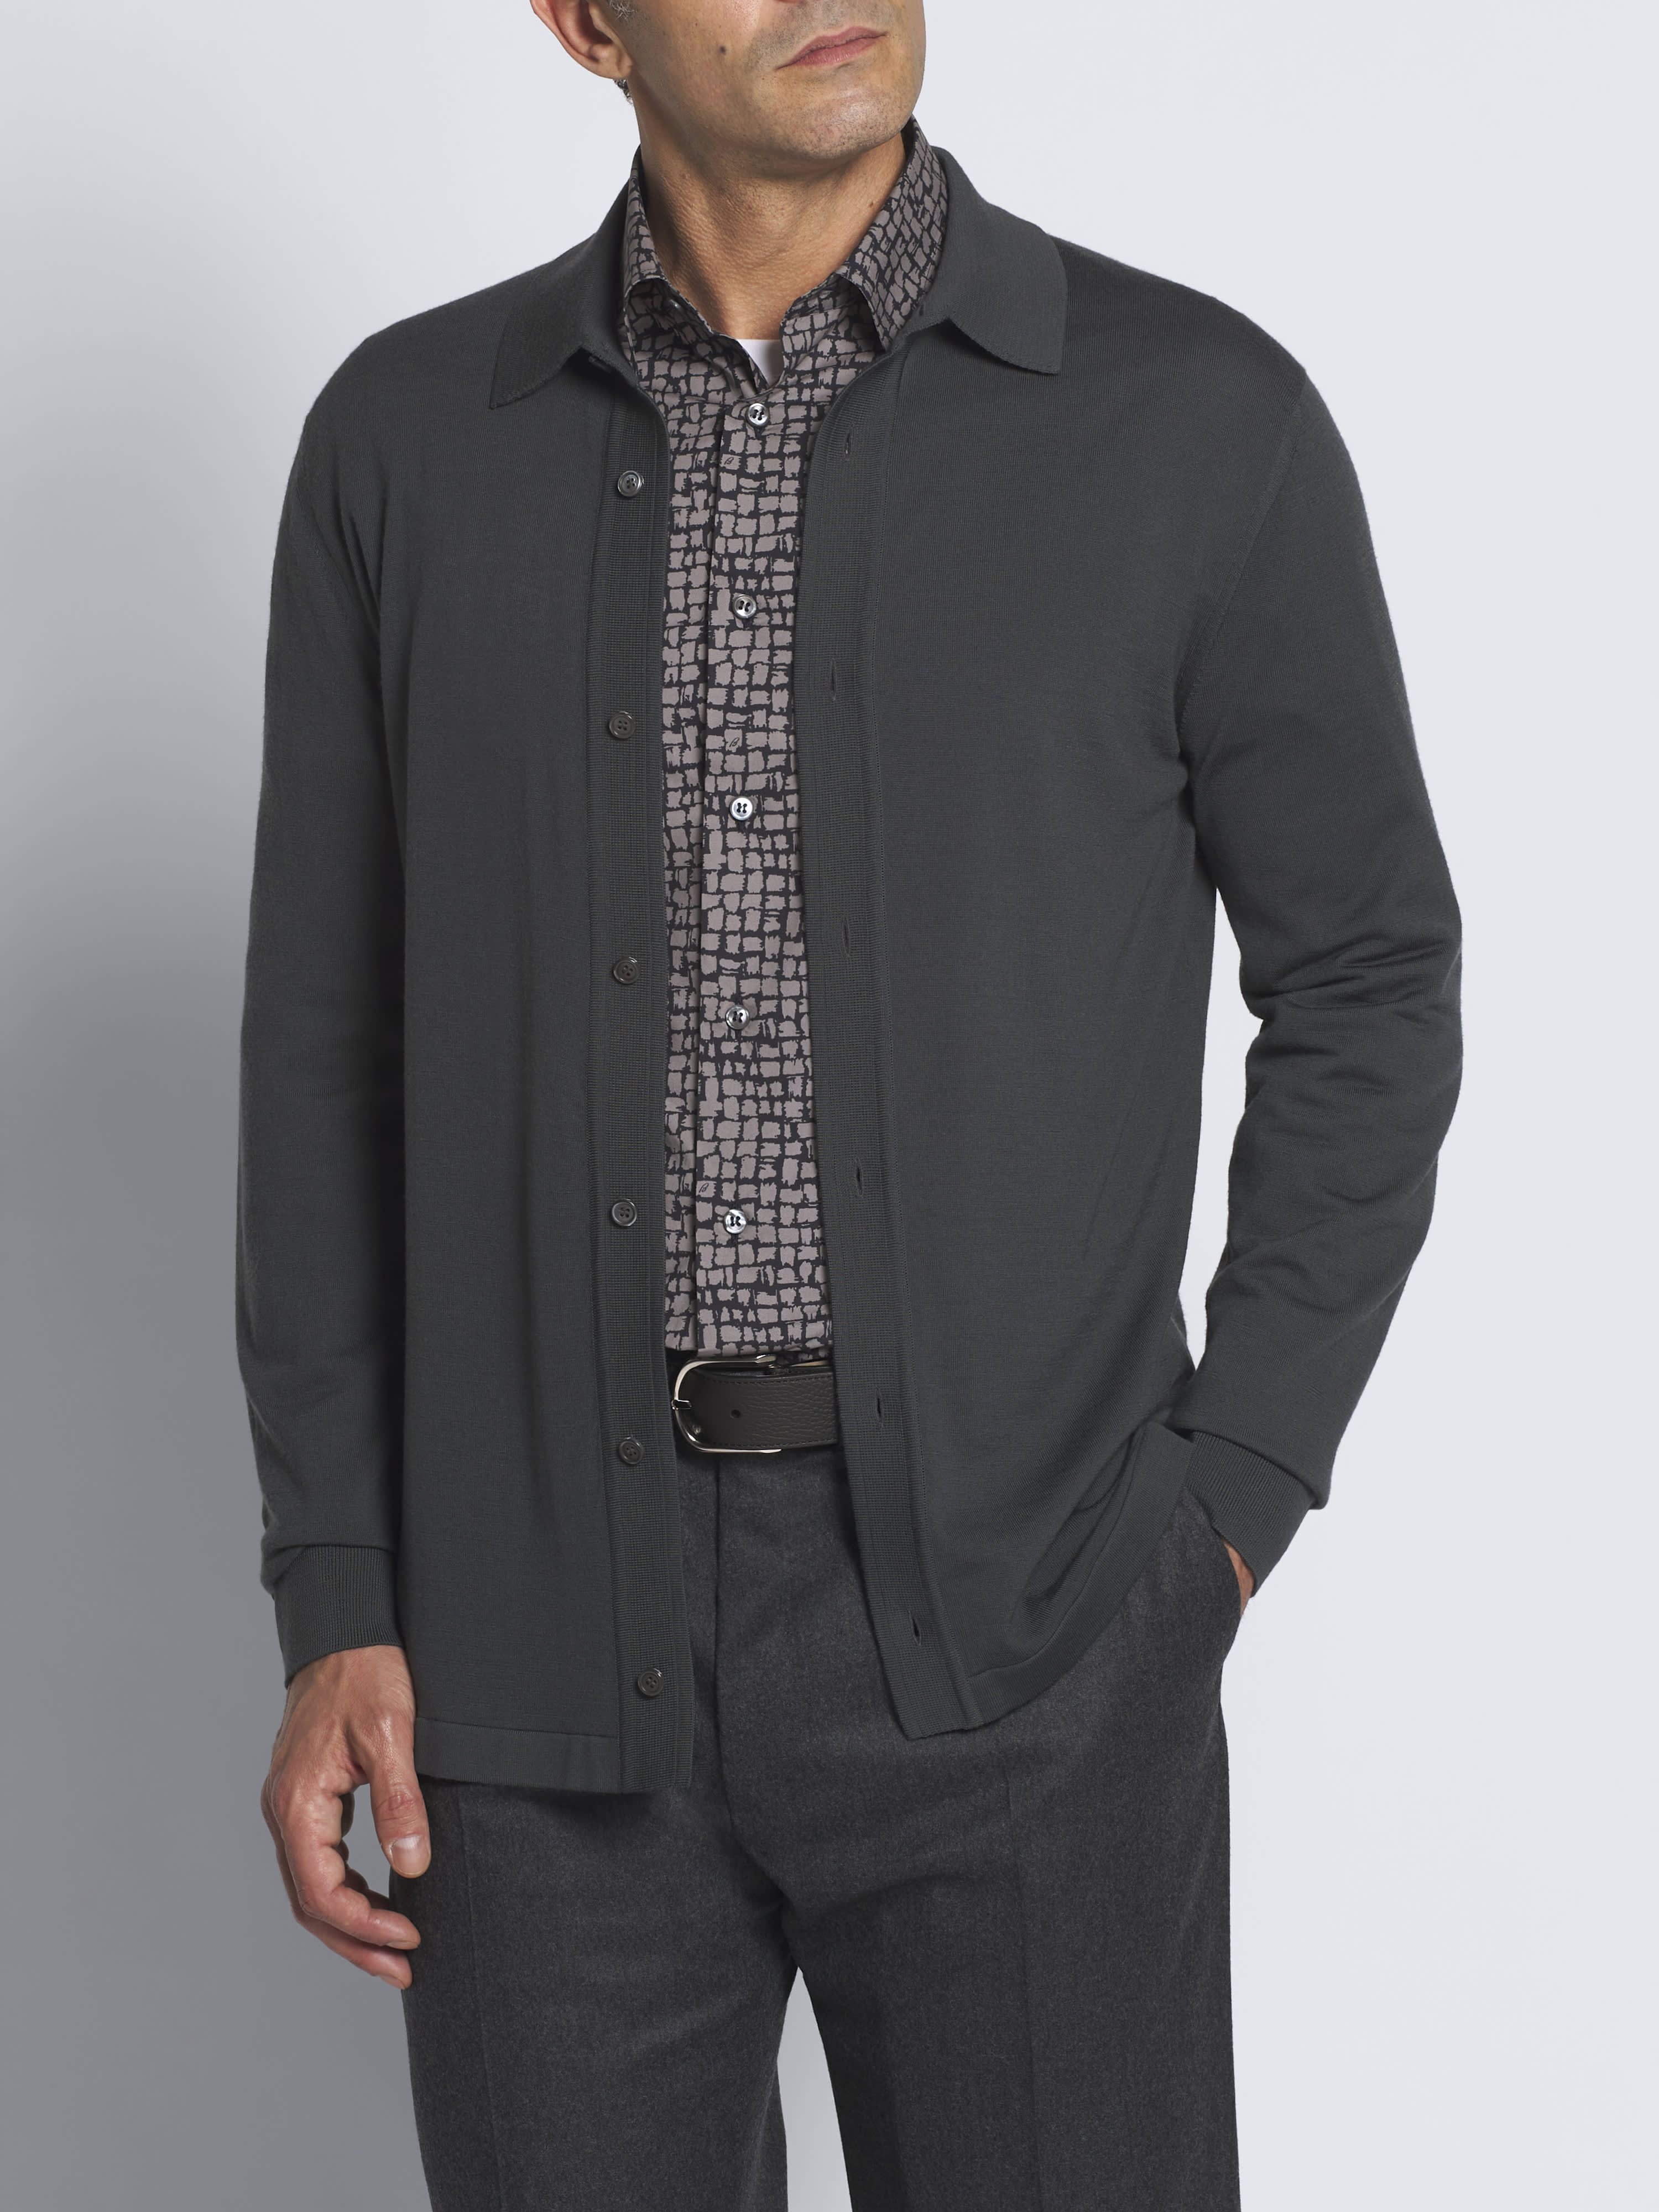 Dark grey cotton blend formal shirt